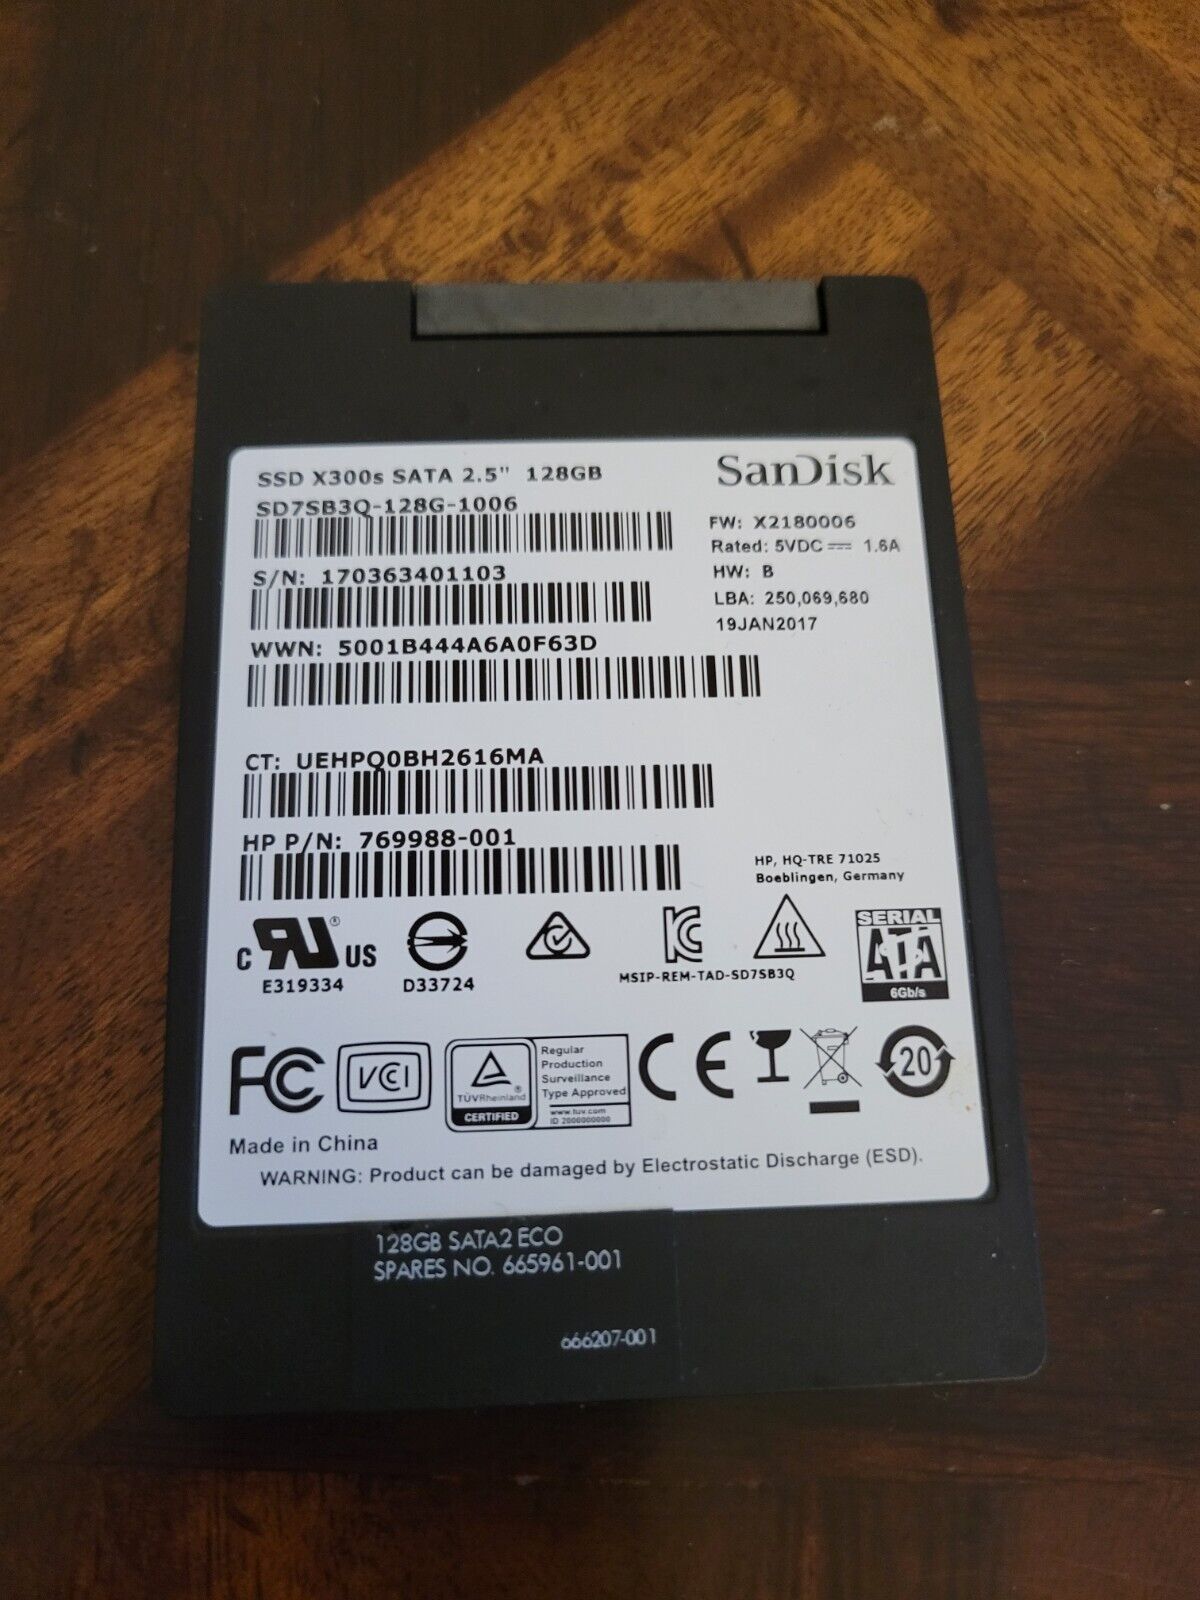 SanDisk X300s SATA 2.5